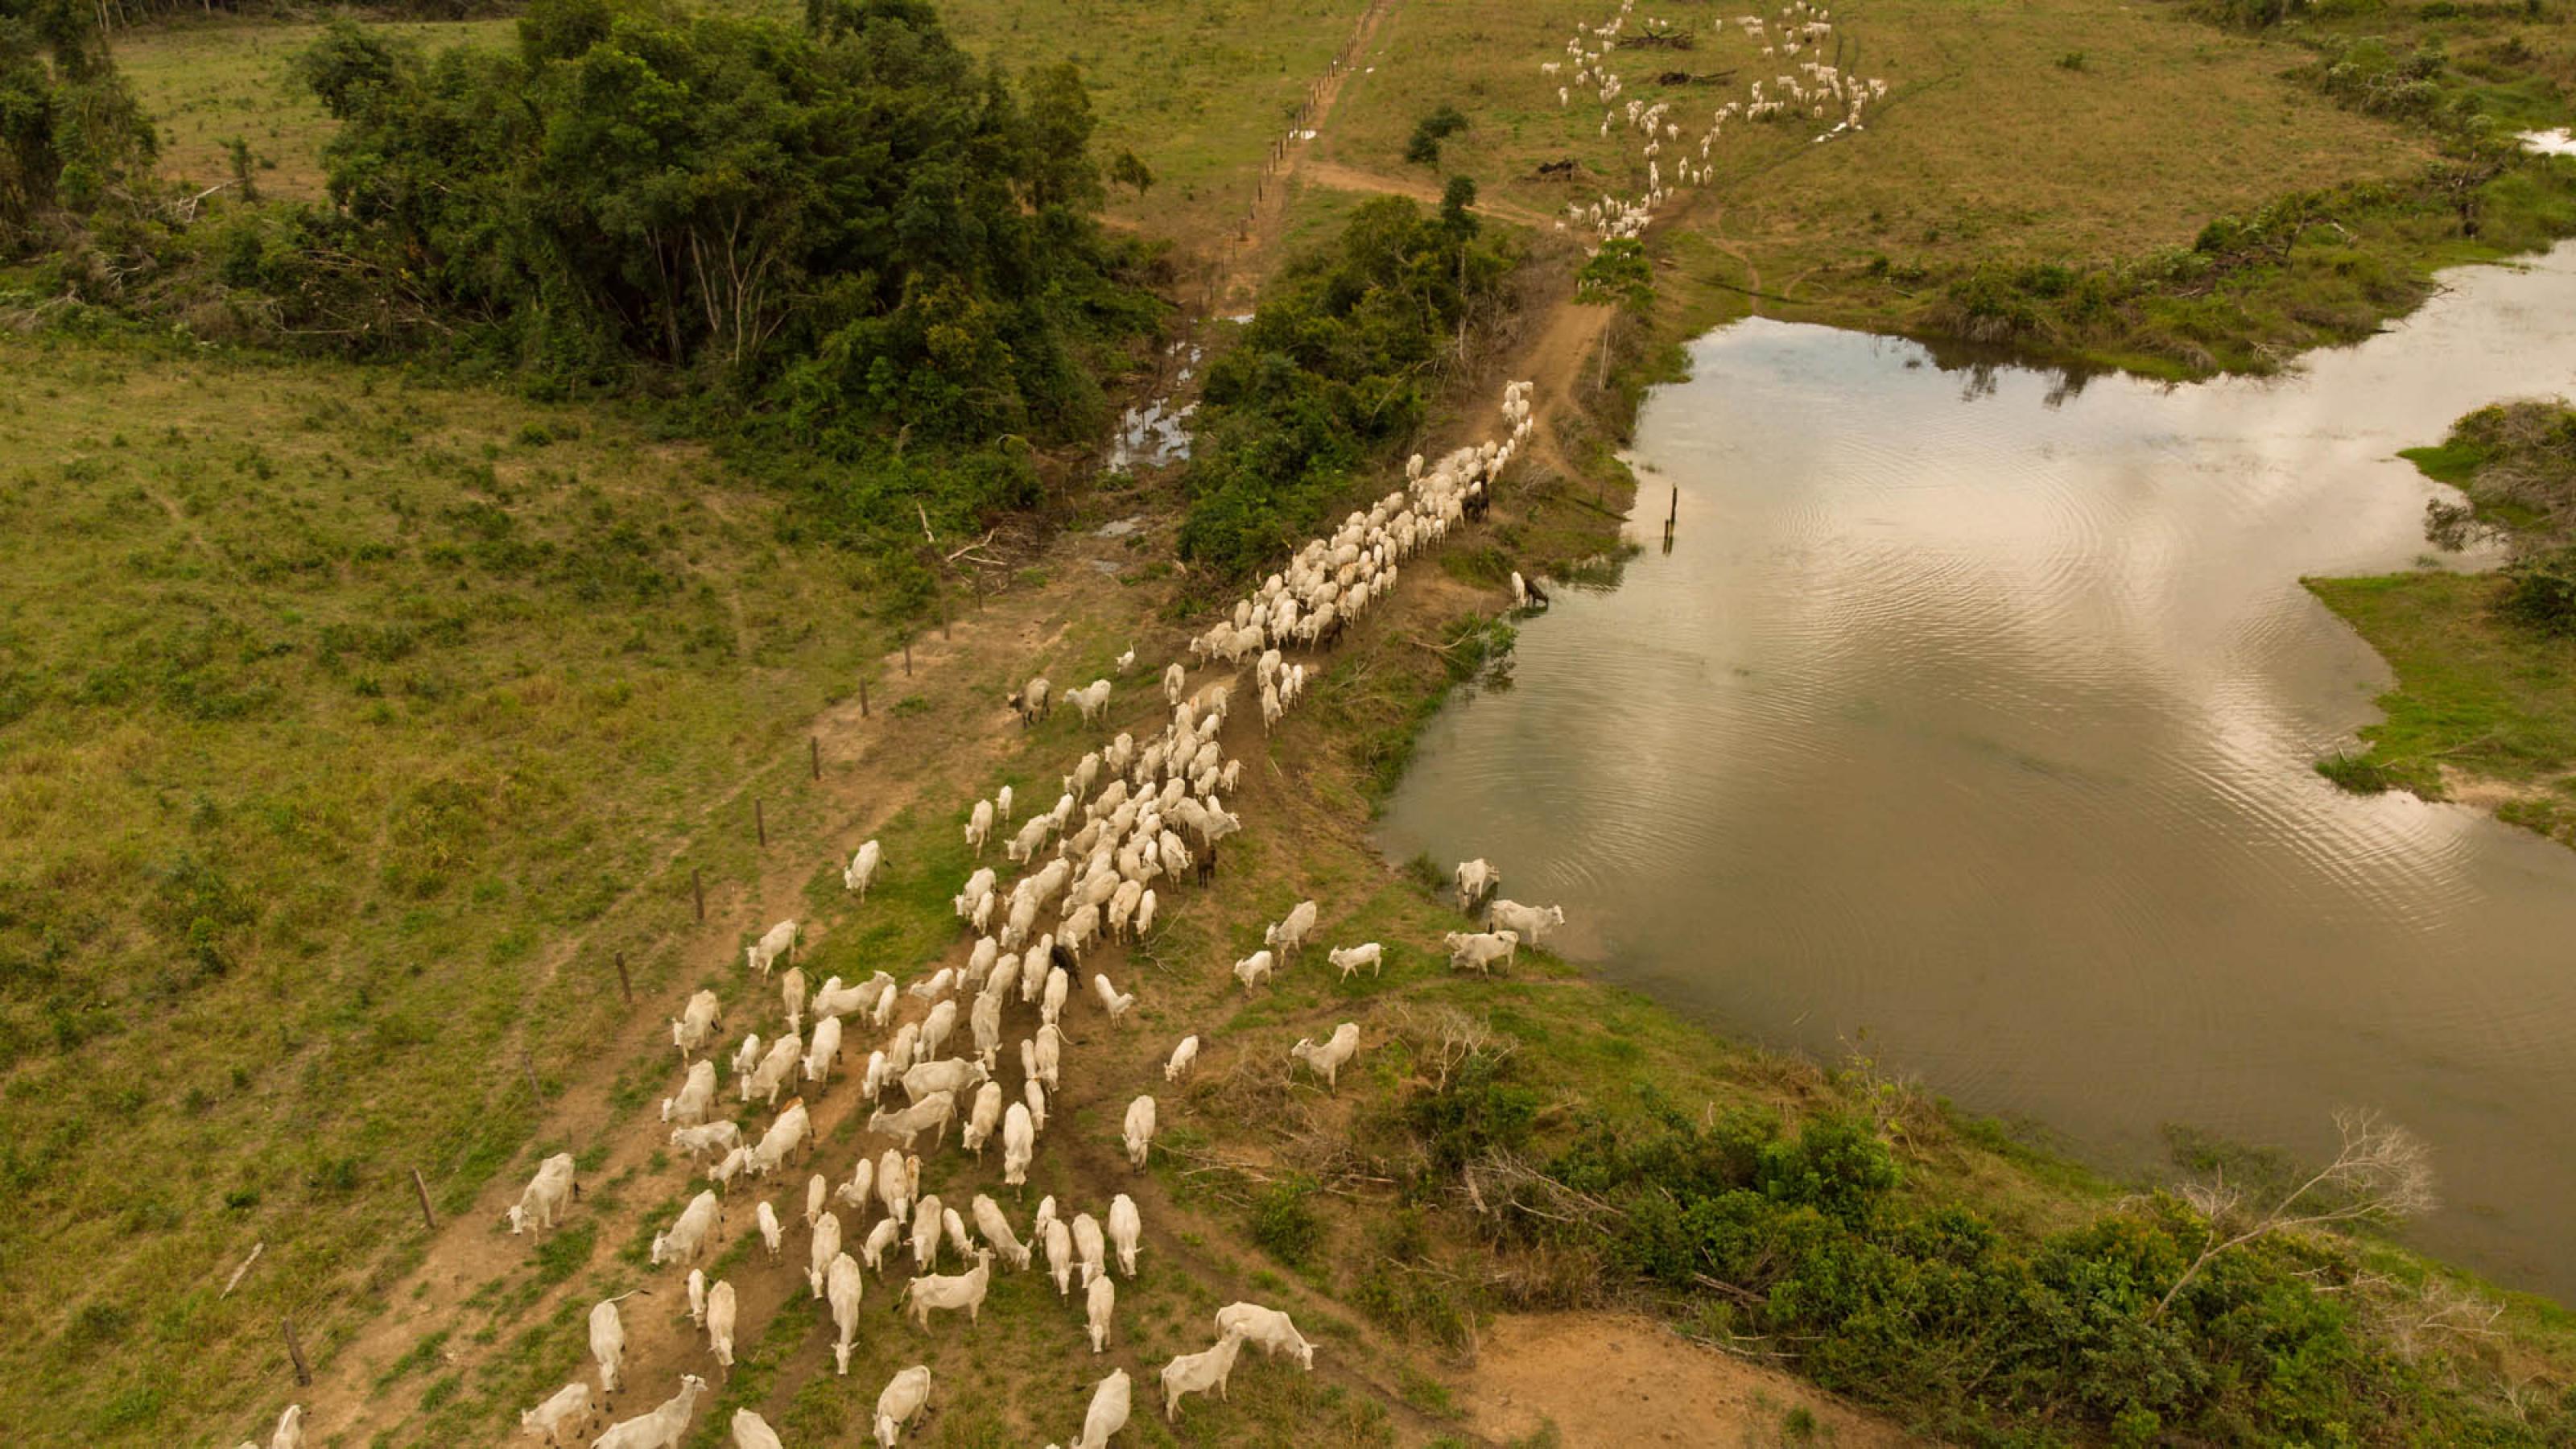 Eine Luftaufnahme zeigt die weißen Rinder, die durch den abgeholzten Regenwald ziehen.